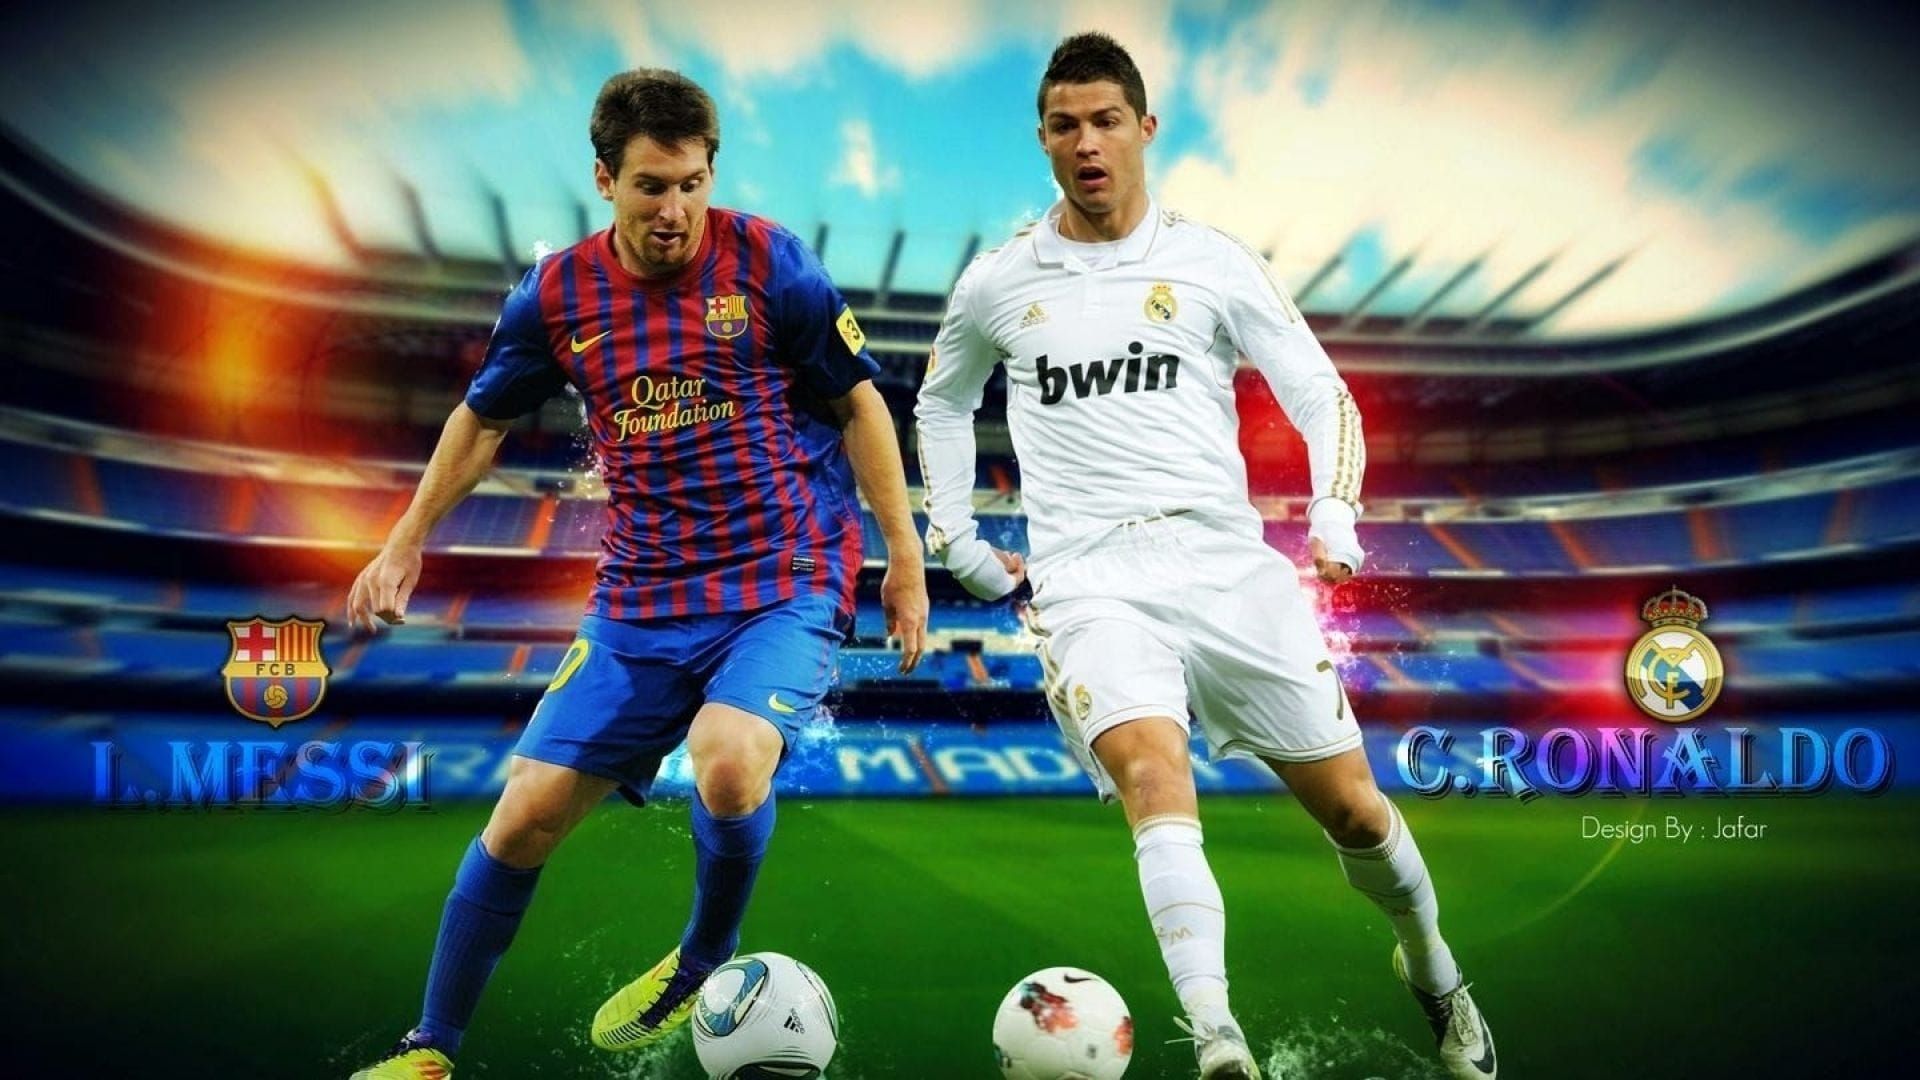 Ronaldo vs. Messi background